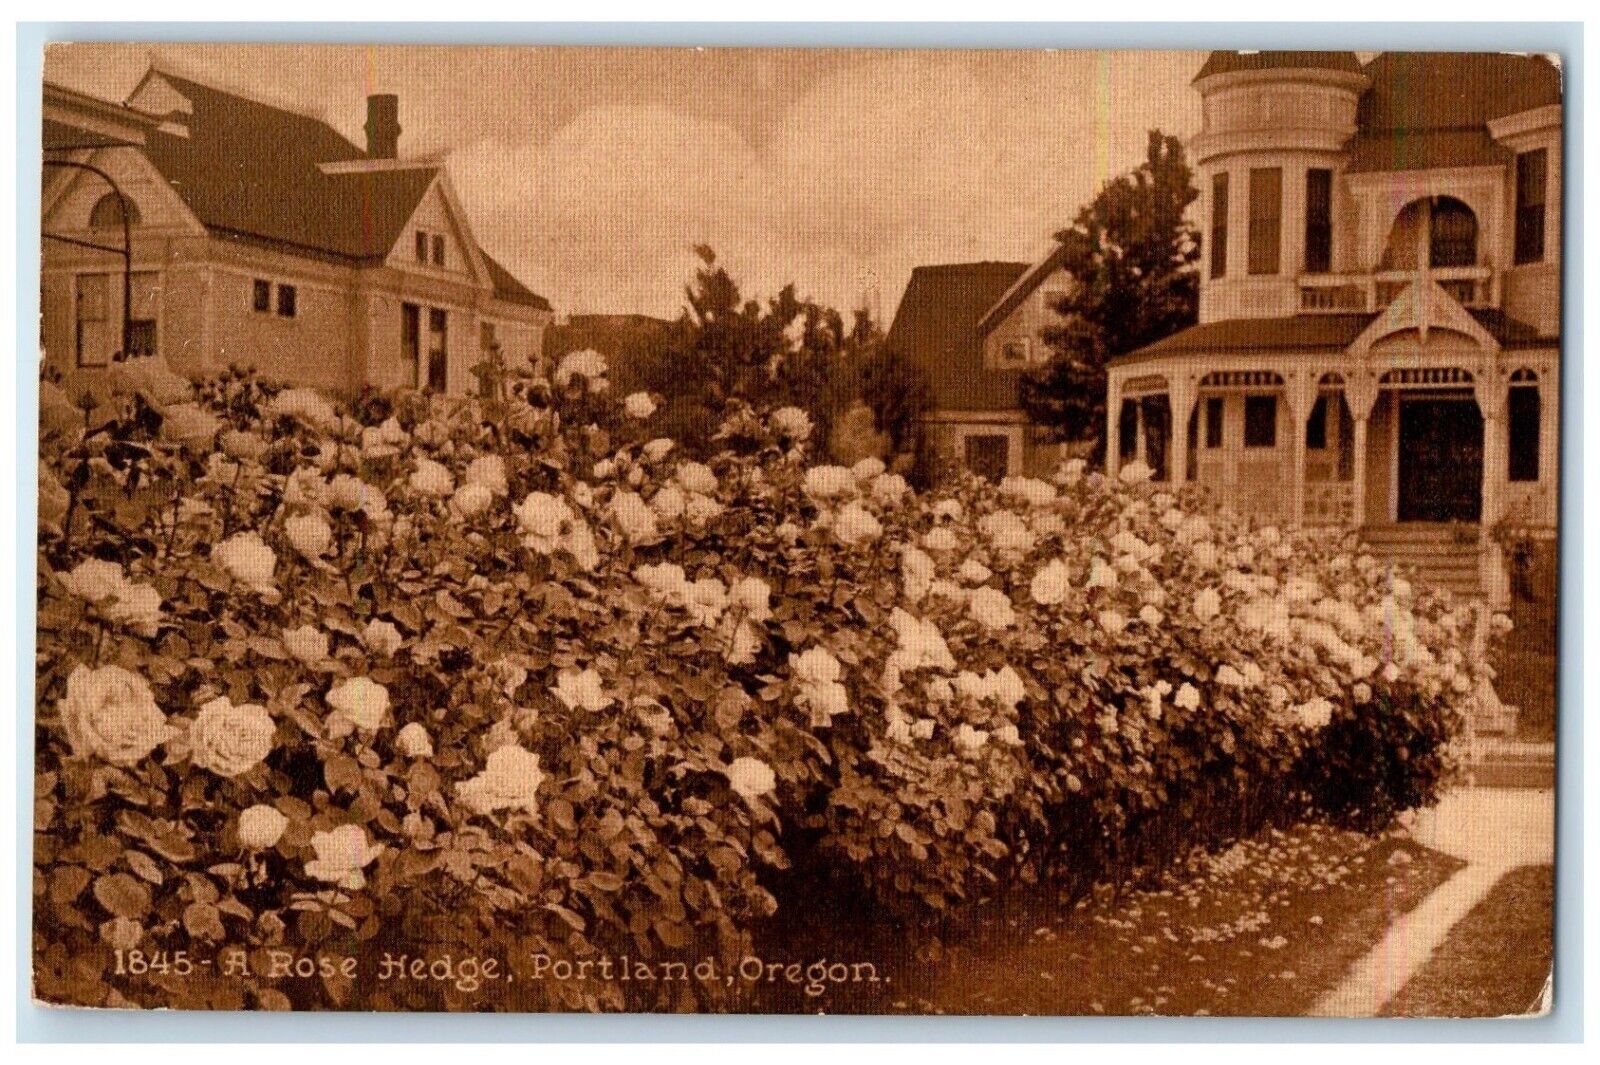 1910 Flowers Garden House Rose Hedge Portland Oregon OR Vintage Antique Postcard